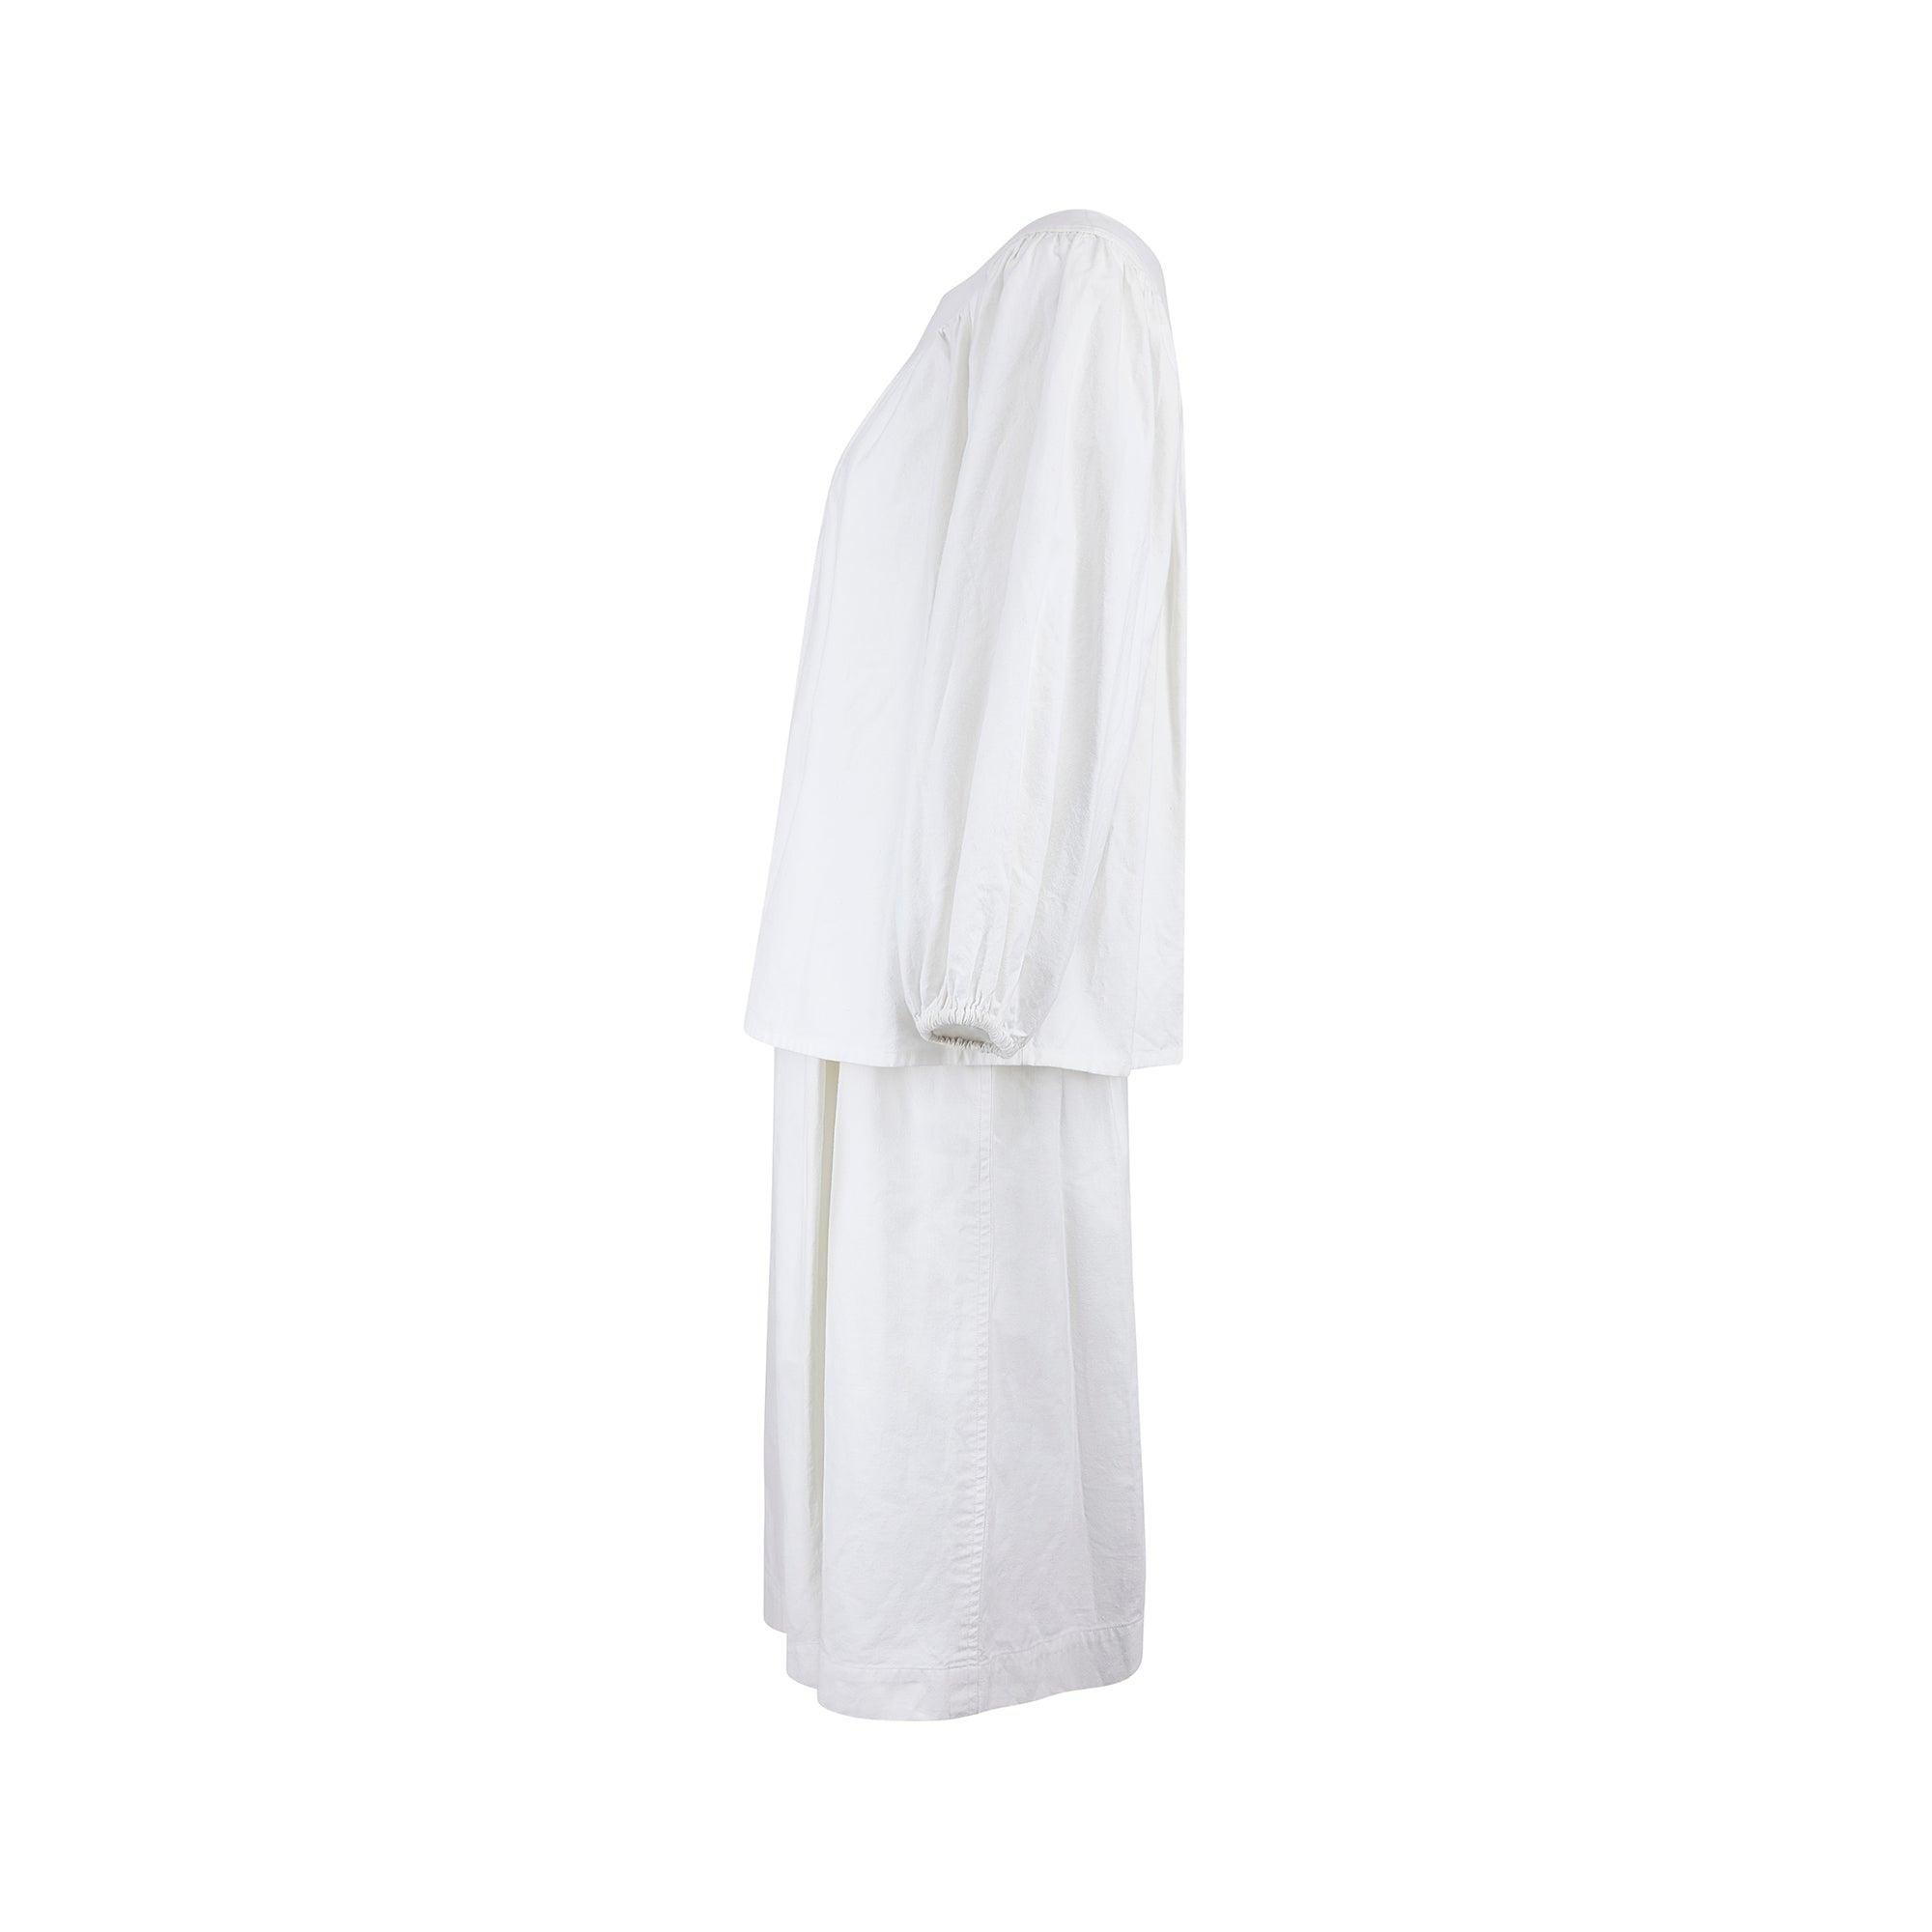 Dieses klassische Sommerensemble aus weißer Baumwolle stammt aus der Ready-to-Wear-Kollektion Frühjahr/Sommer 1975 von Yves Saint Laurent. Das Oberteil hat Ballonärmel und einen luftigen, lockeren Schnitt. Der elegante, weite Ausschnitt ist eine